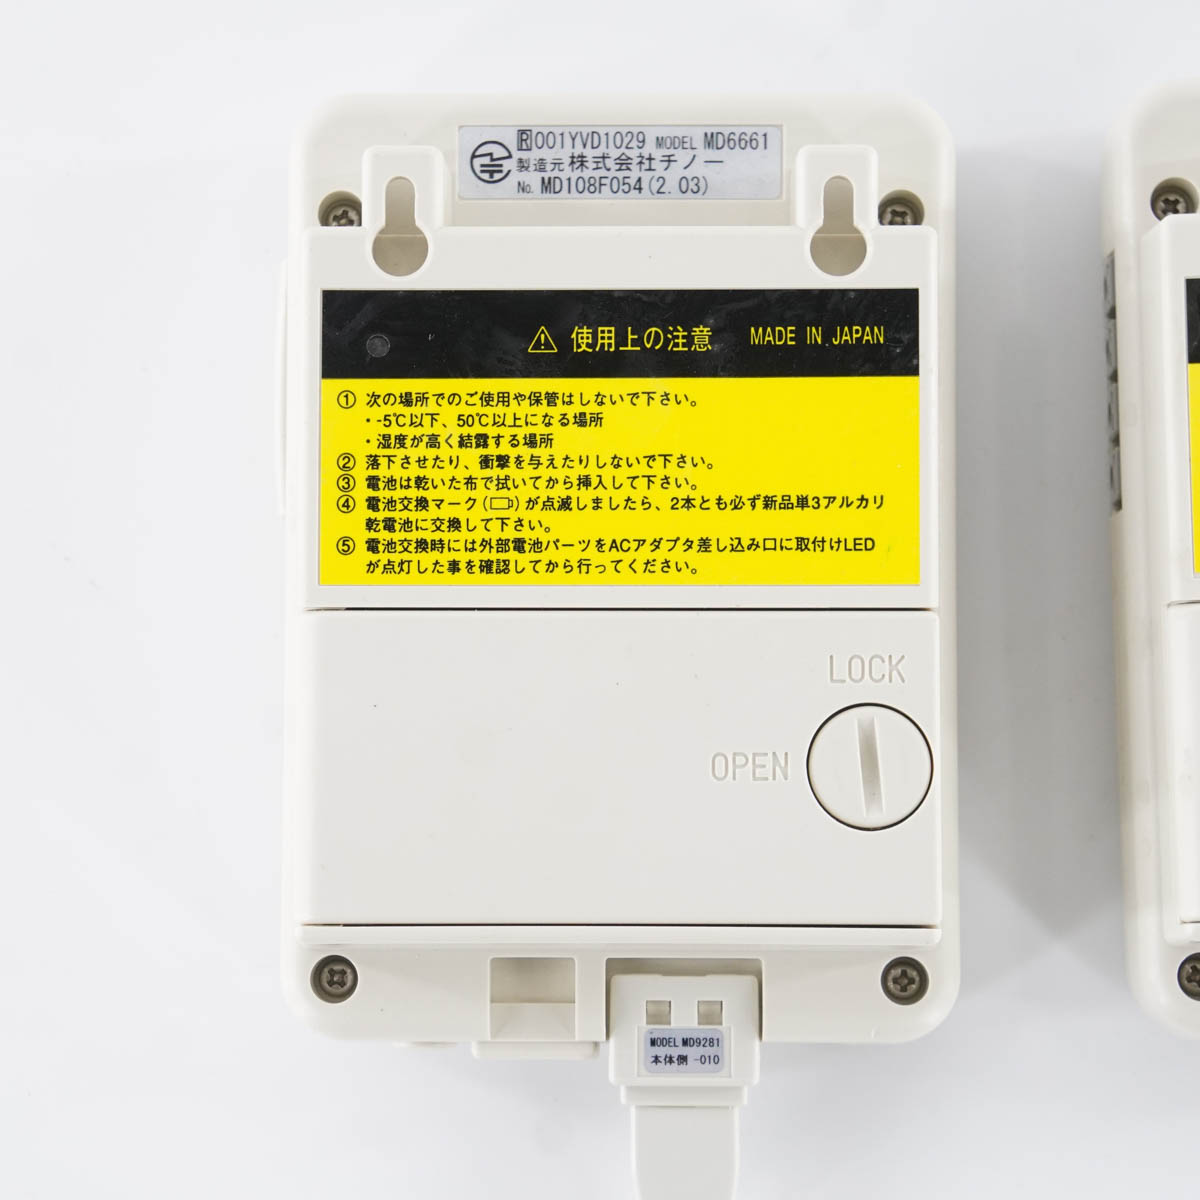 DW]USED 8日保証 3セット入荷 セット CHINO MD6661 MD-R01 無線温度